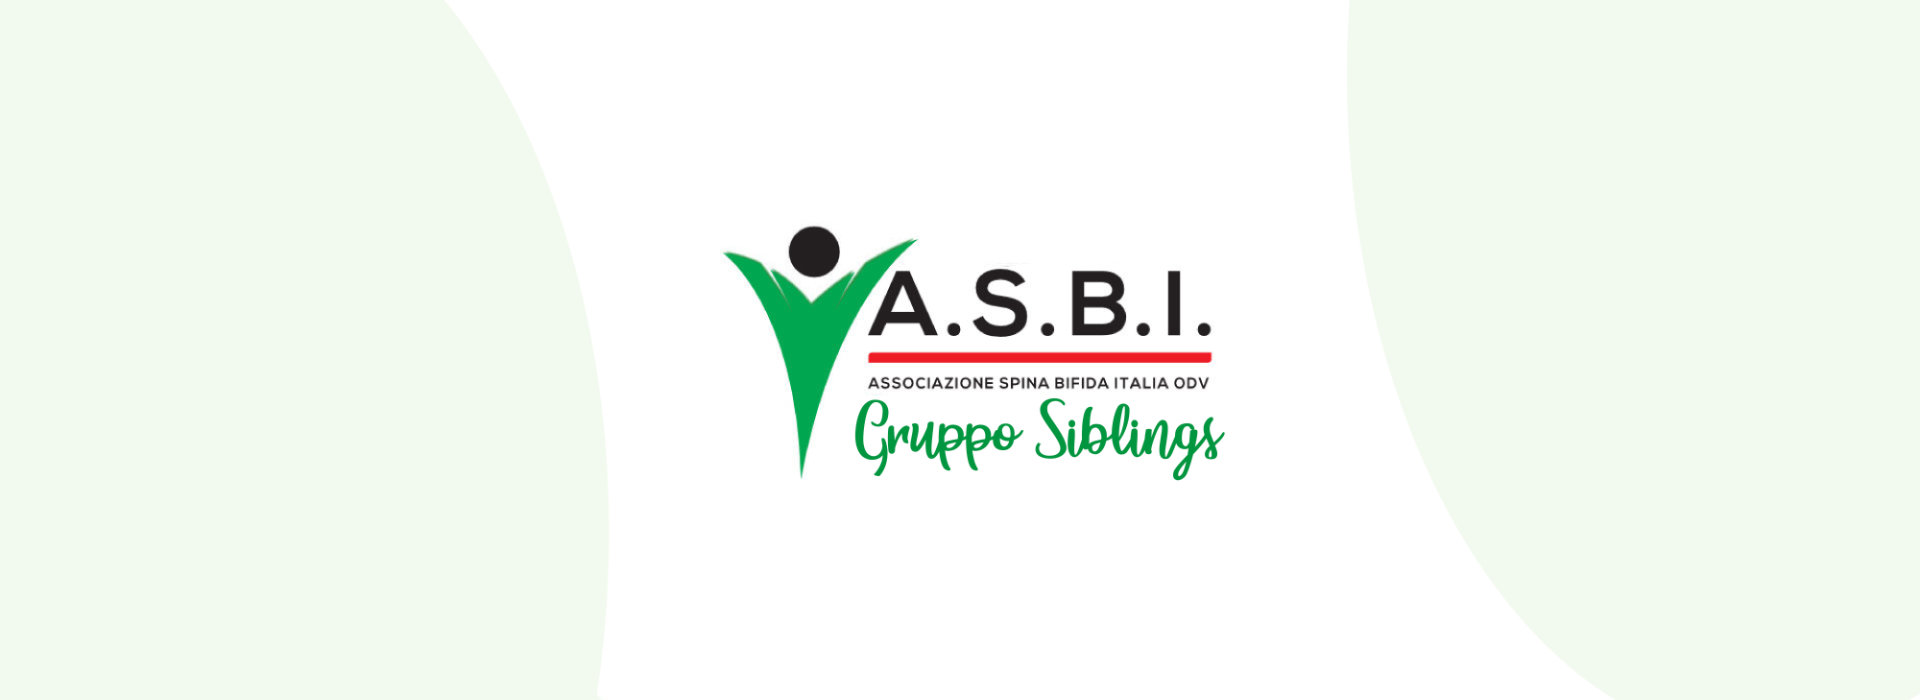 Gruppo Siblings ASBI